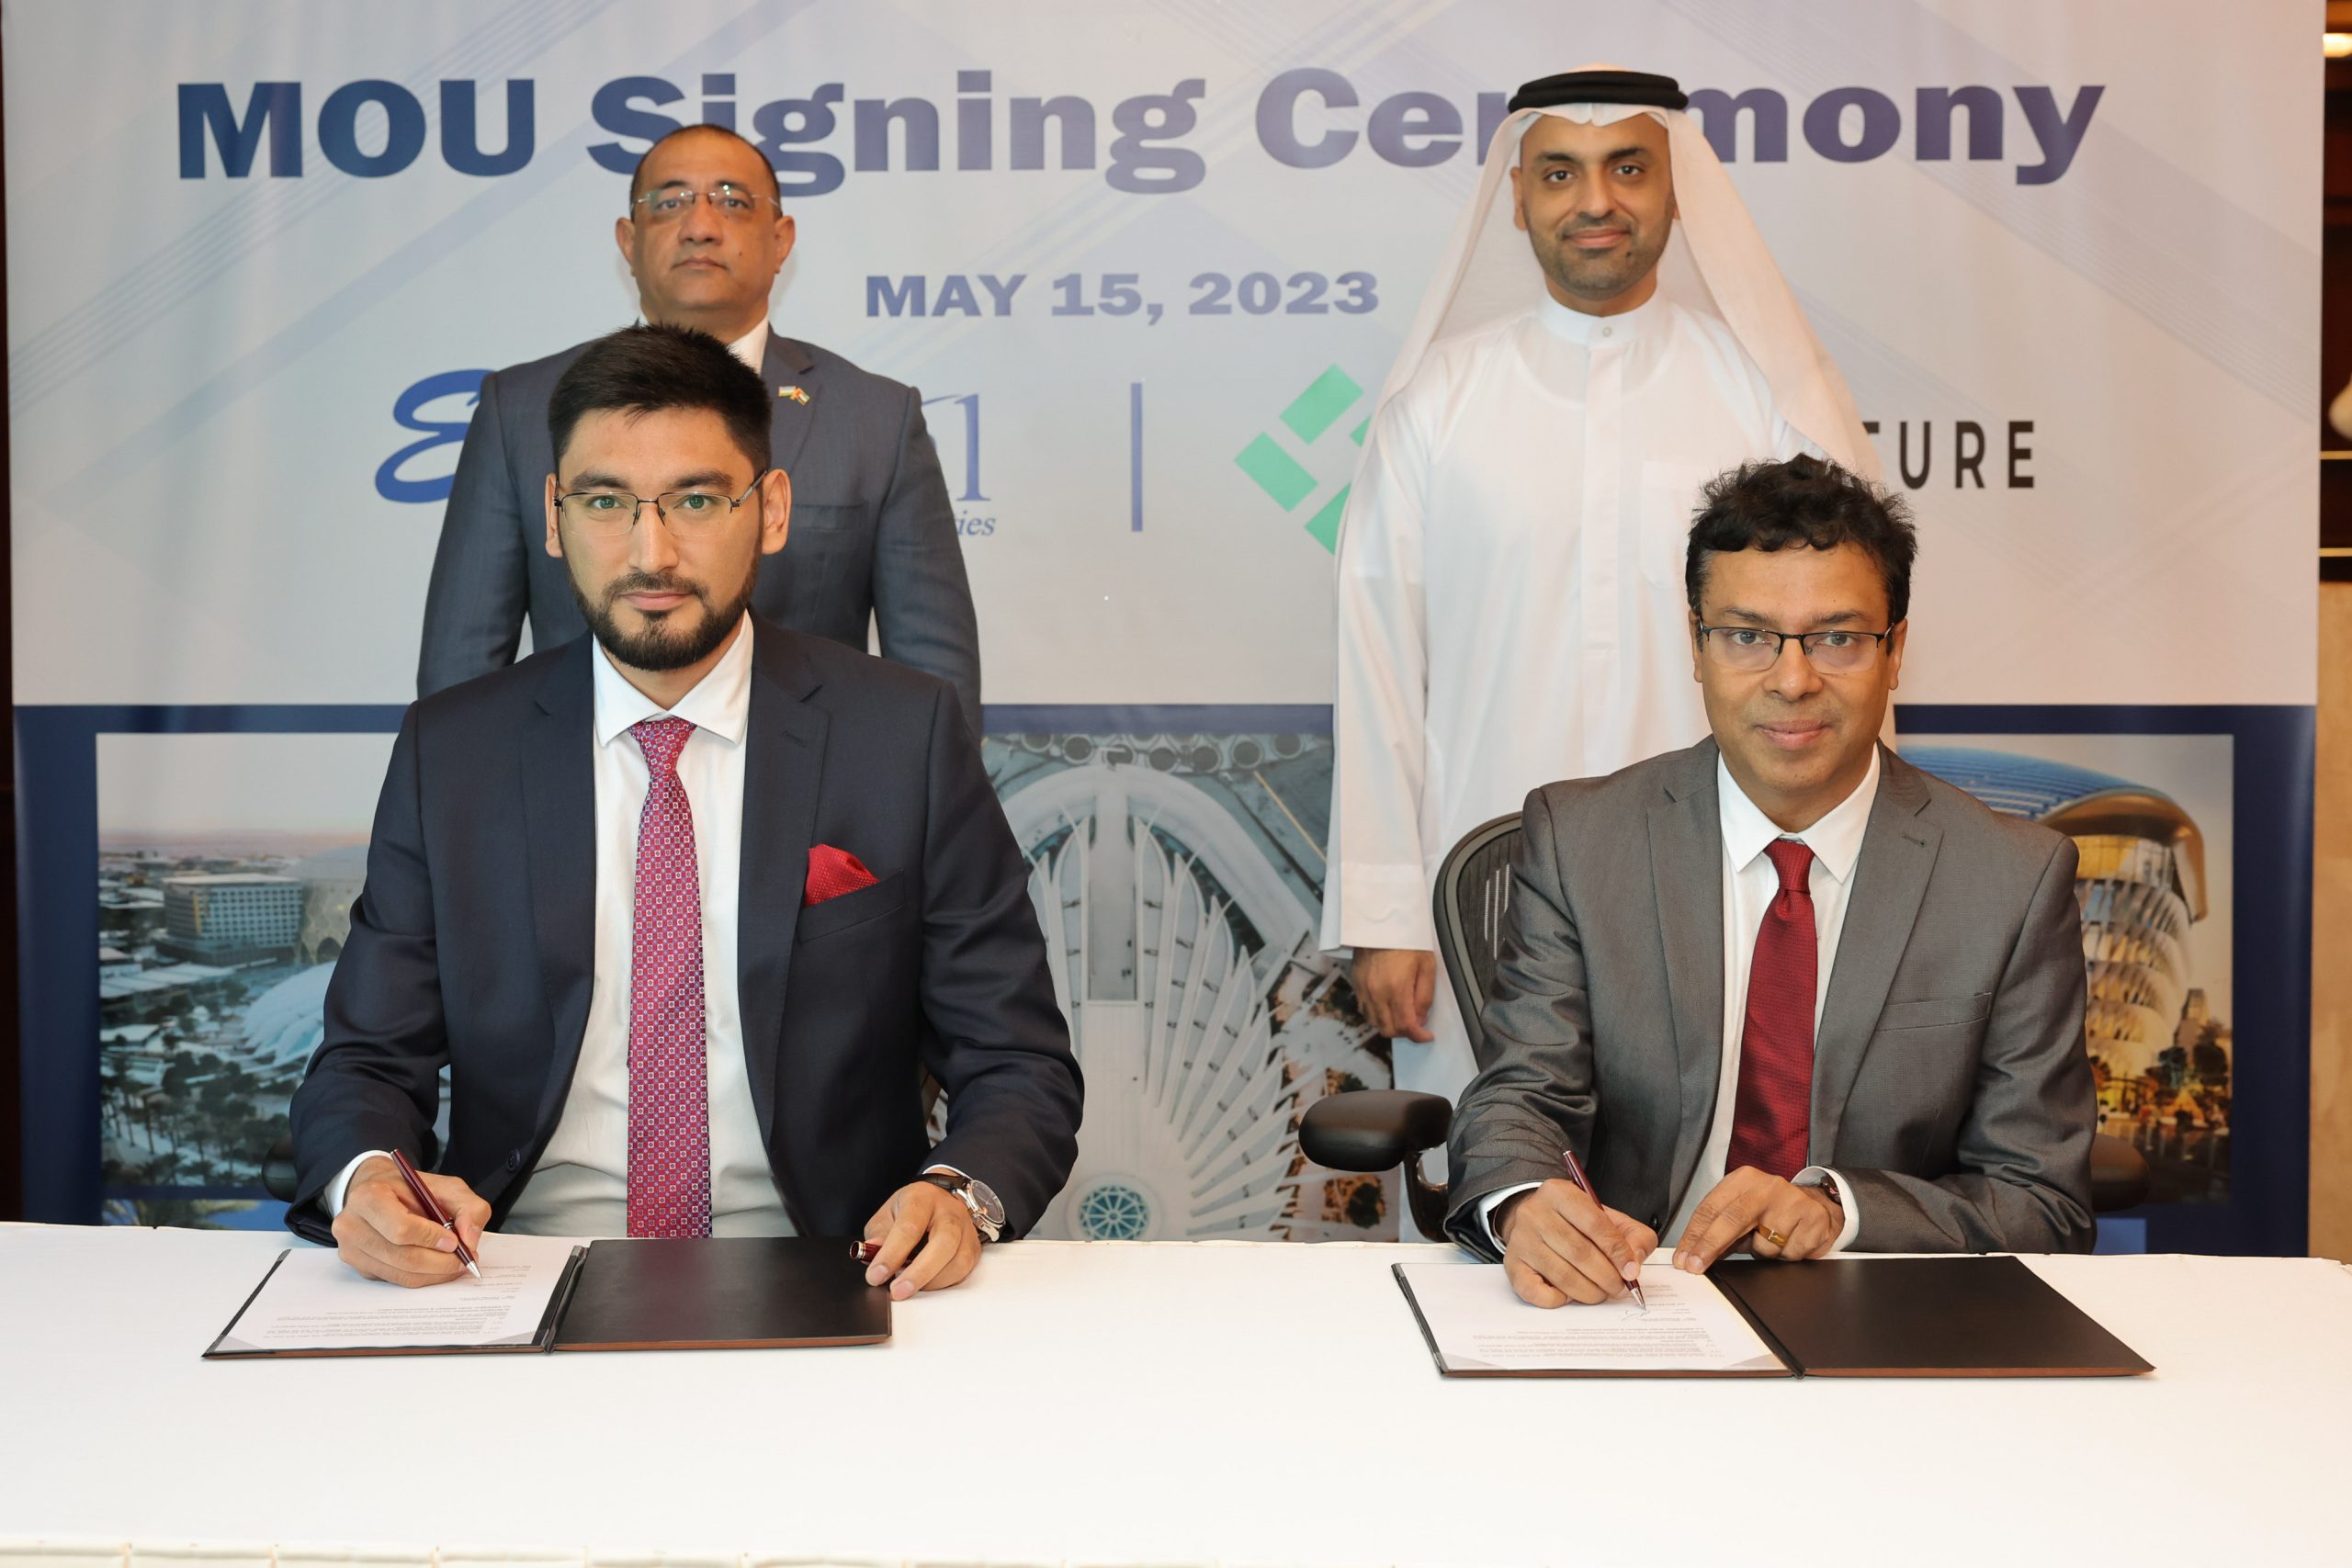 اتفاقية بين شركتين للطاقة المتجددة من الإمارات وأوزبكستان أولى ثمار بعثة غرفة دبي العالمية إلى آسيا الوسطى